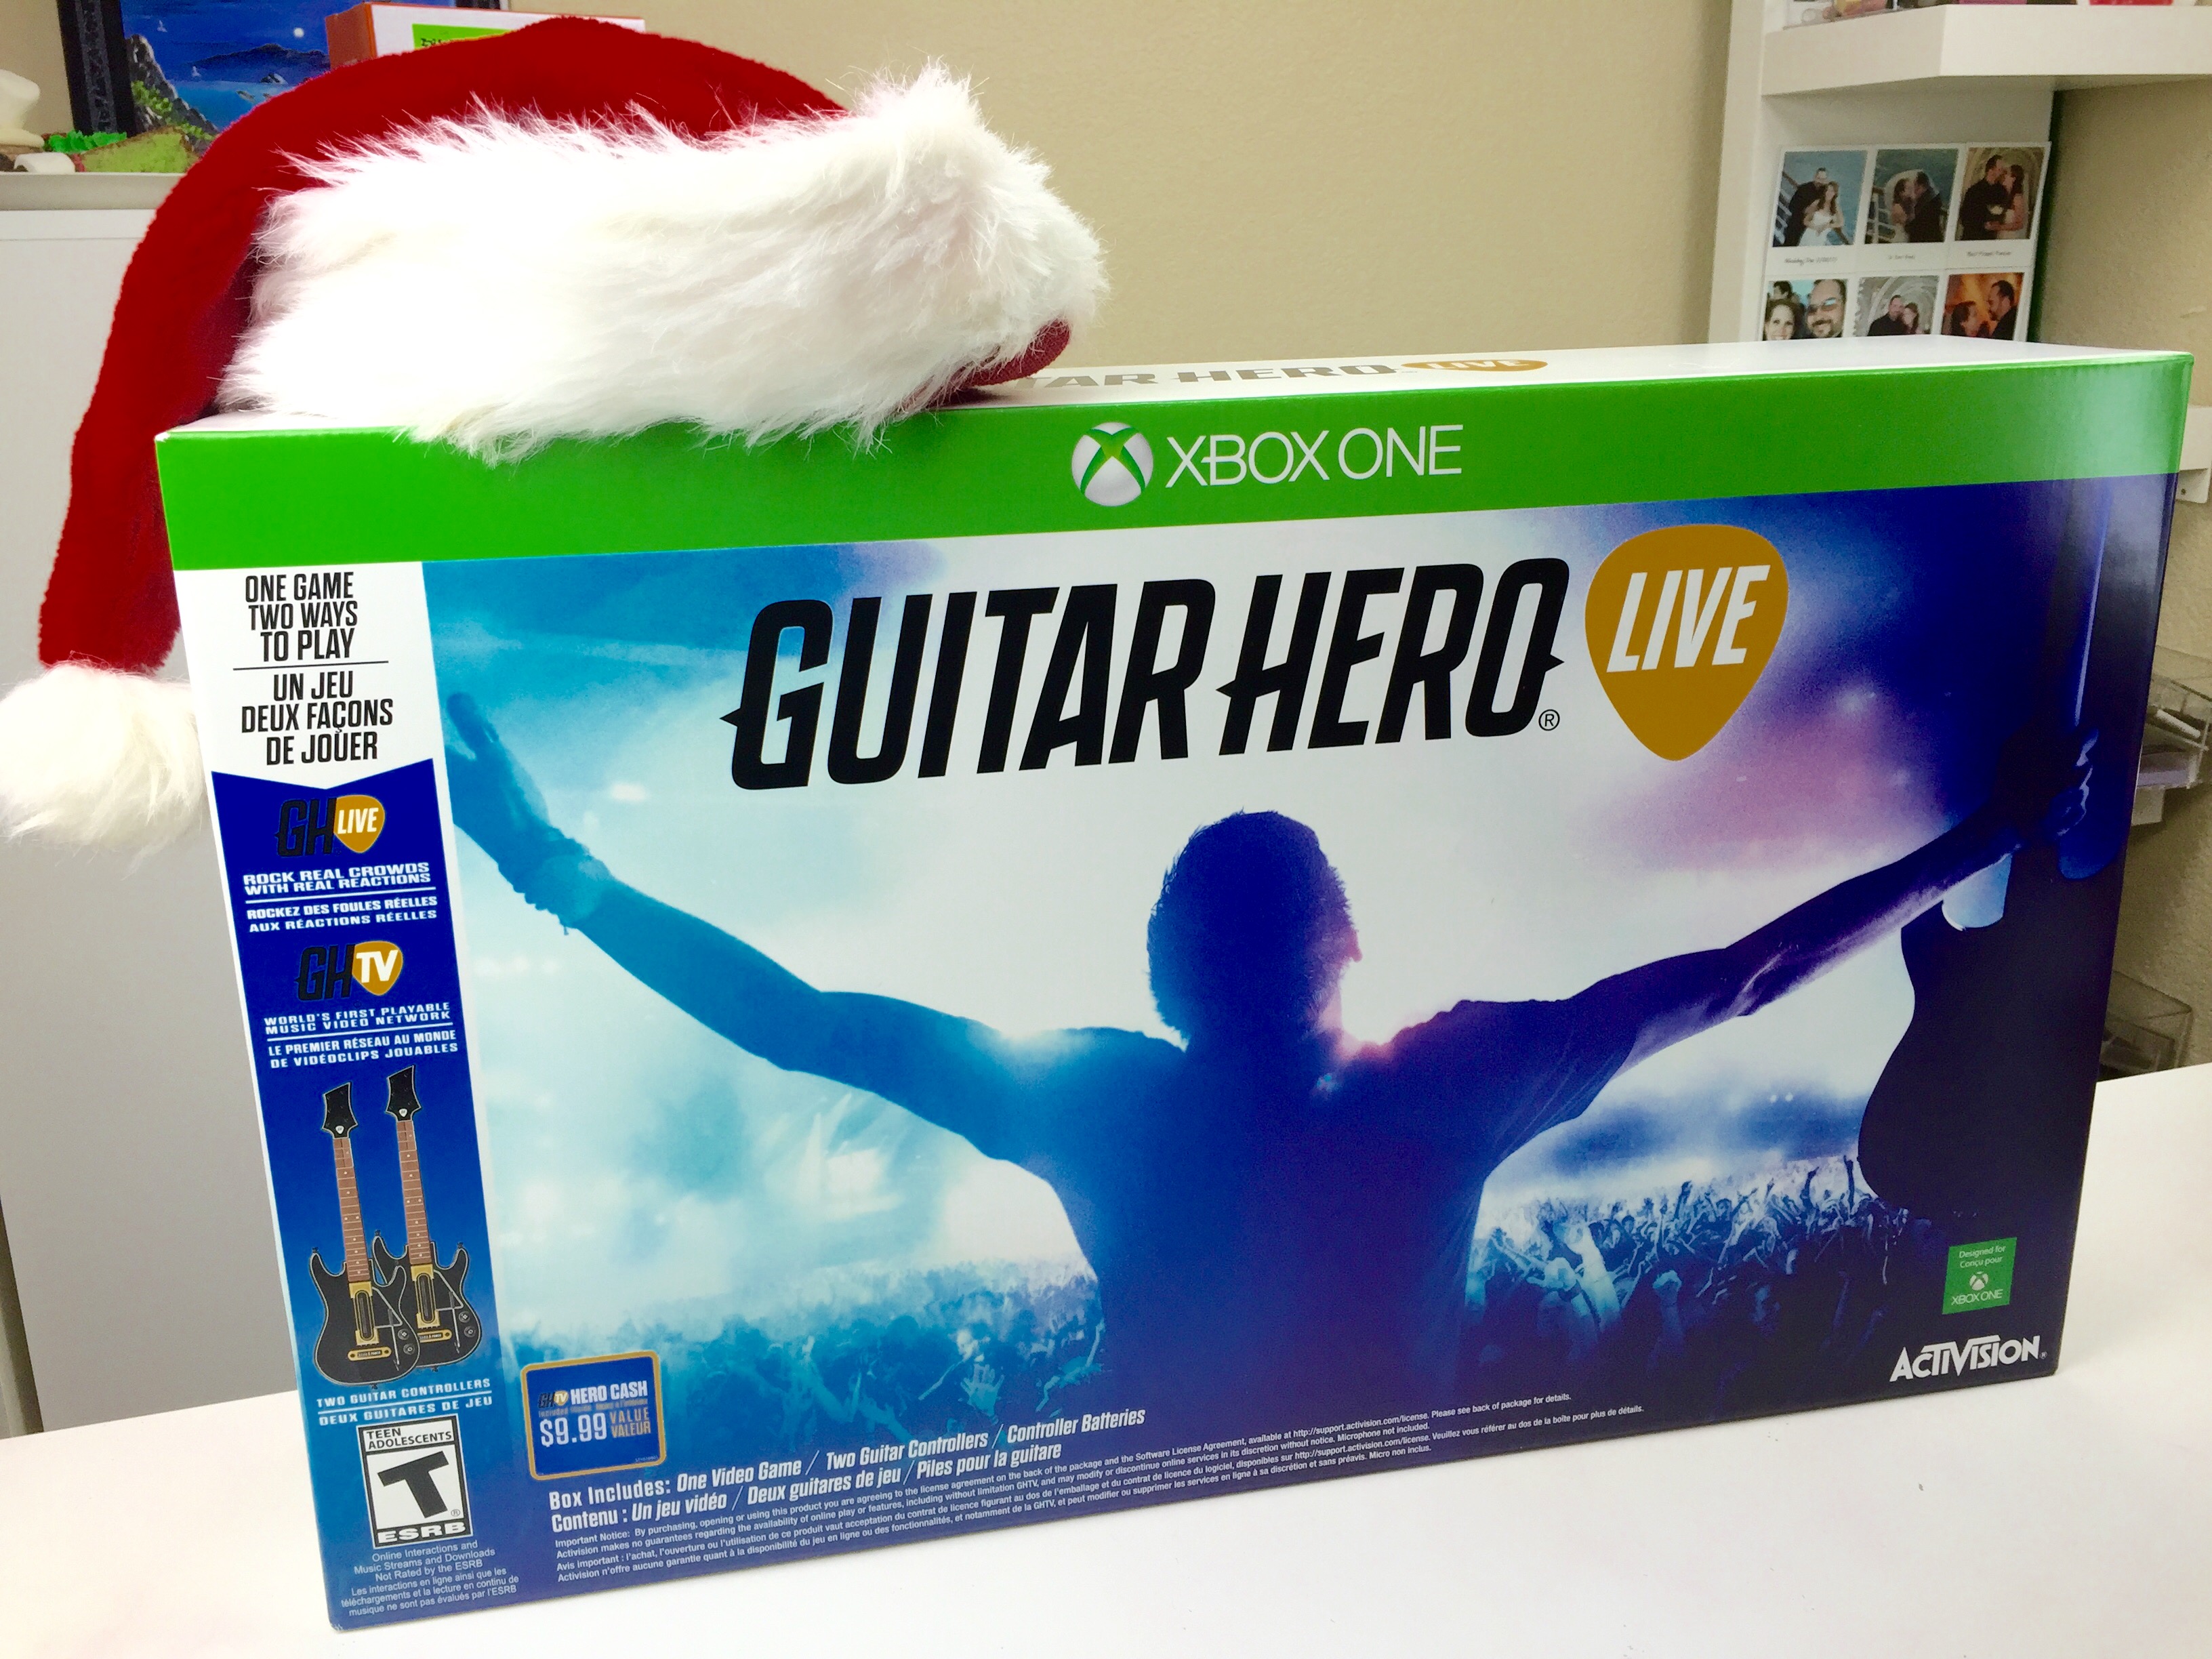 #GuitarHeroLive #Technology #Gamer #Games #HolidayGiftGuide #ad